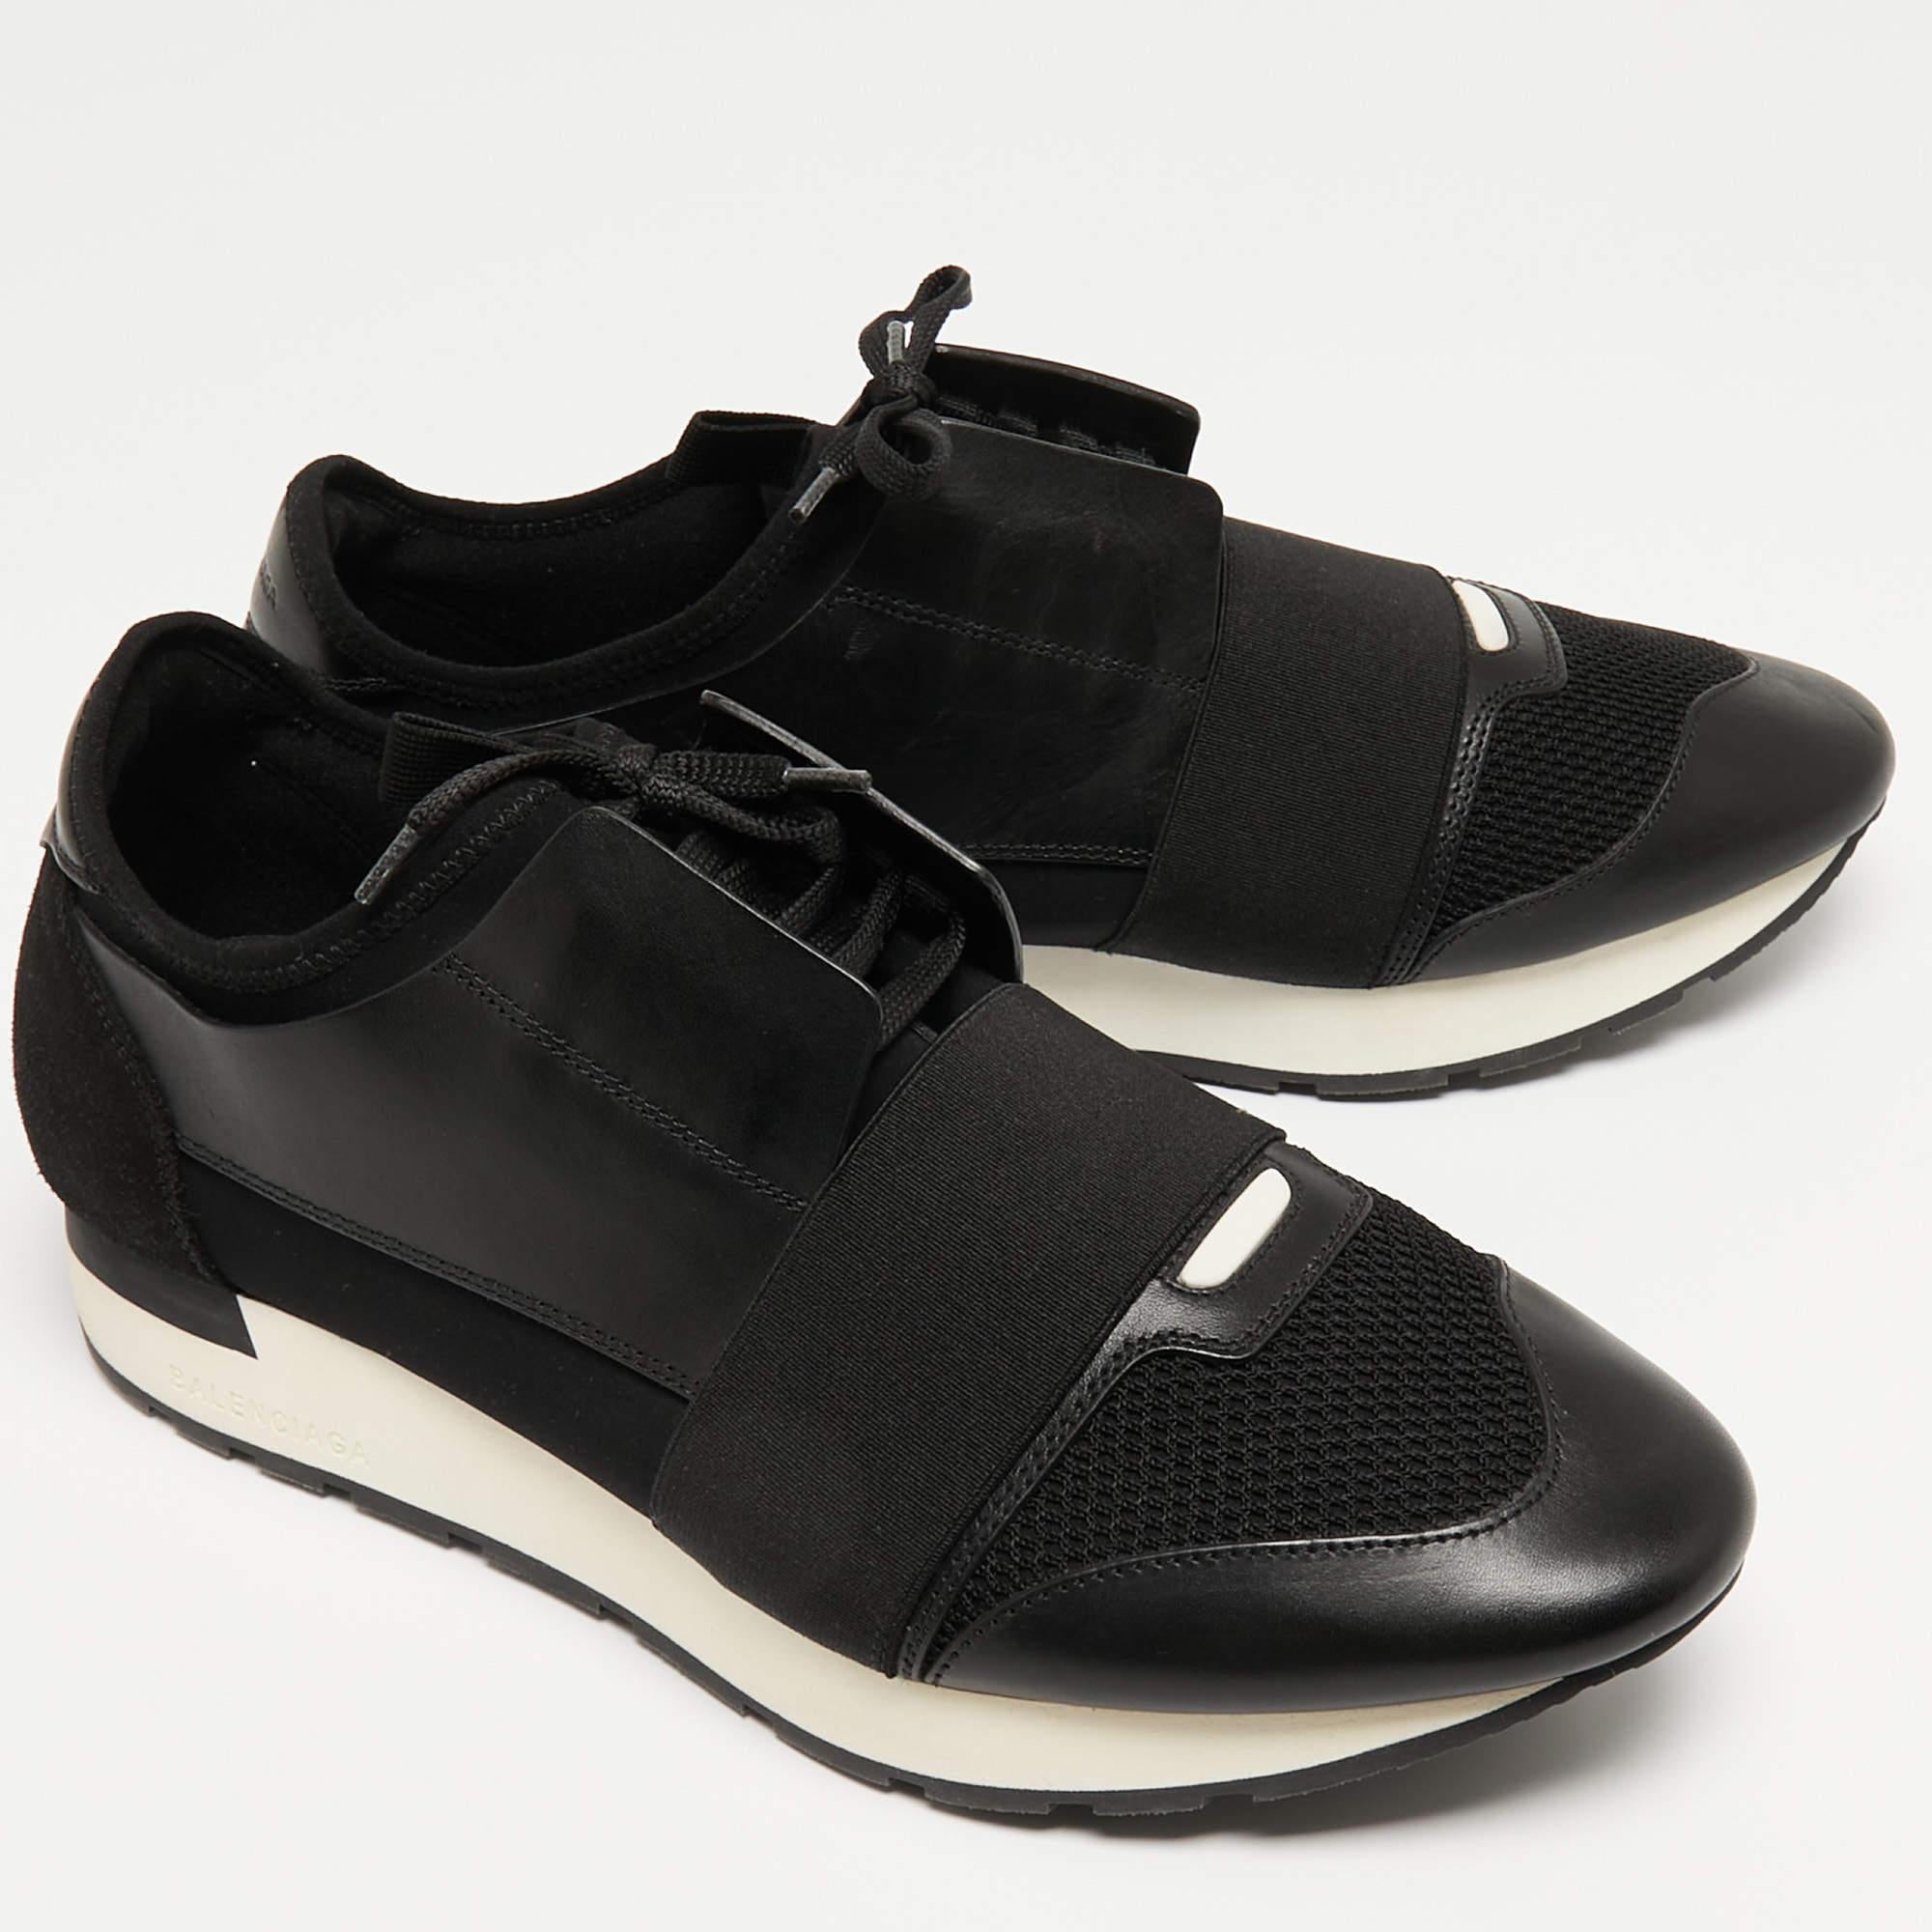 Cette paire de baskets Race Runners de Balenciaga est la dernière nouveauté en matière de chaussures. Ces baskets noires ont été confectionnées en cuir et en tissu et présentent une silhouette chic. Ils sont dotés d'orteils recouverts, de brides sur